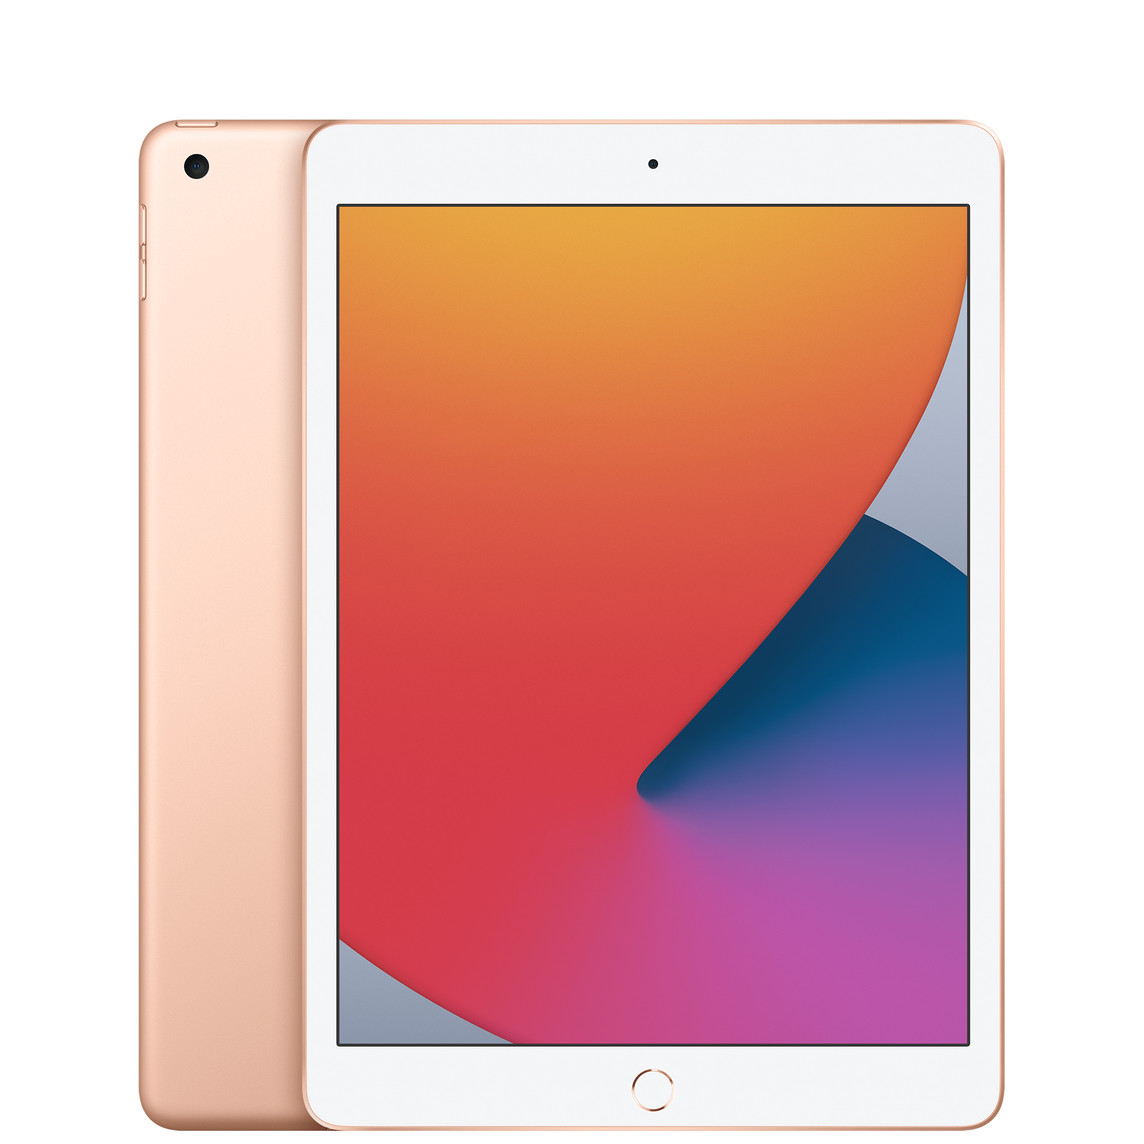 Achteraanzicht van iPad, camera met één lens linksboven, roségoudkleurige uitvoering, vooraanzicht, all-screendesign, witte schermrand